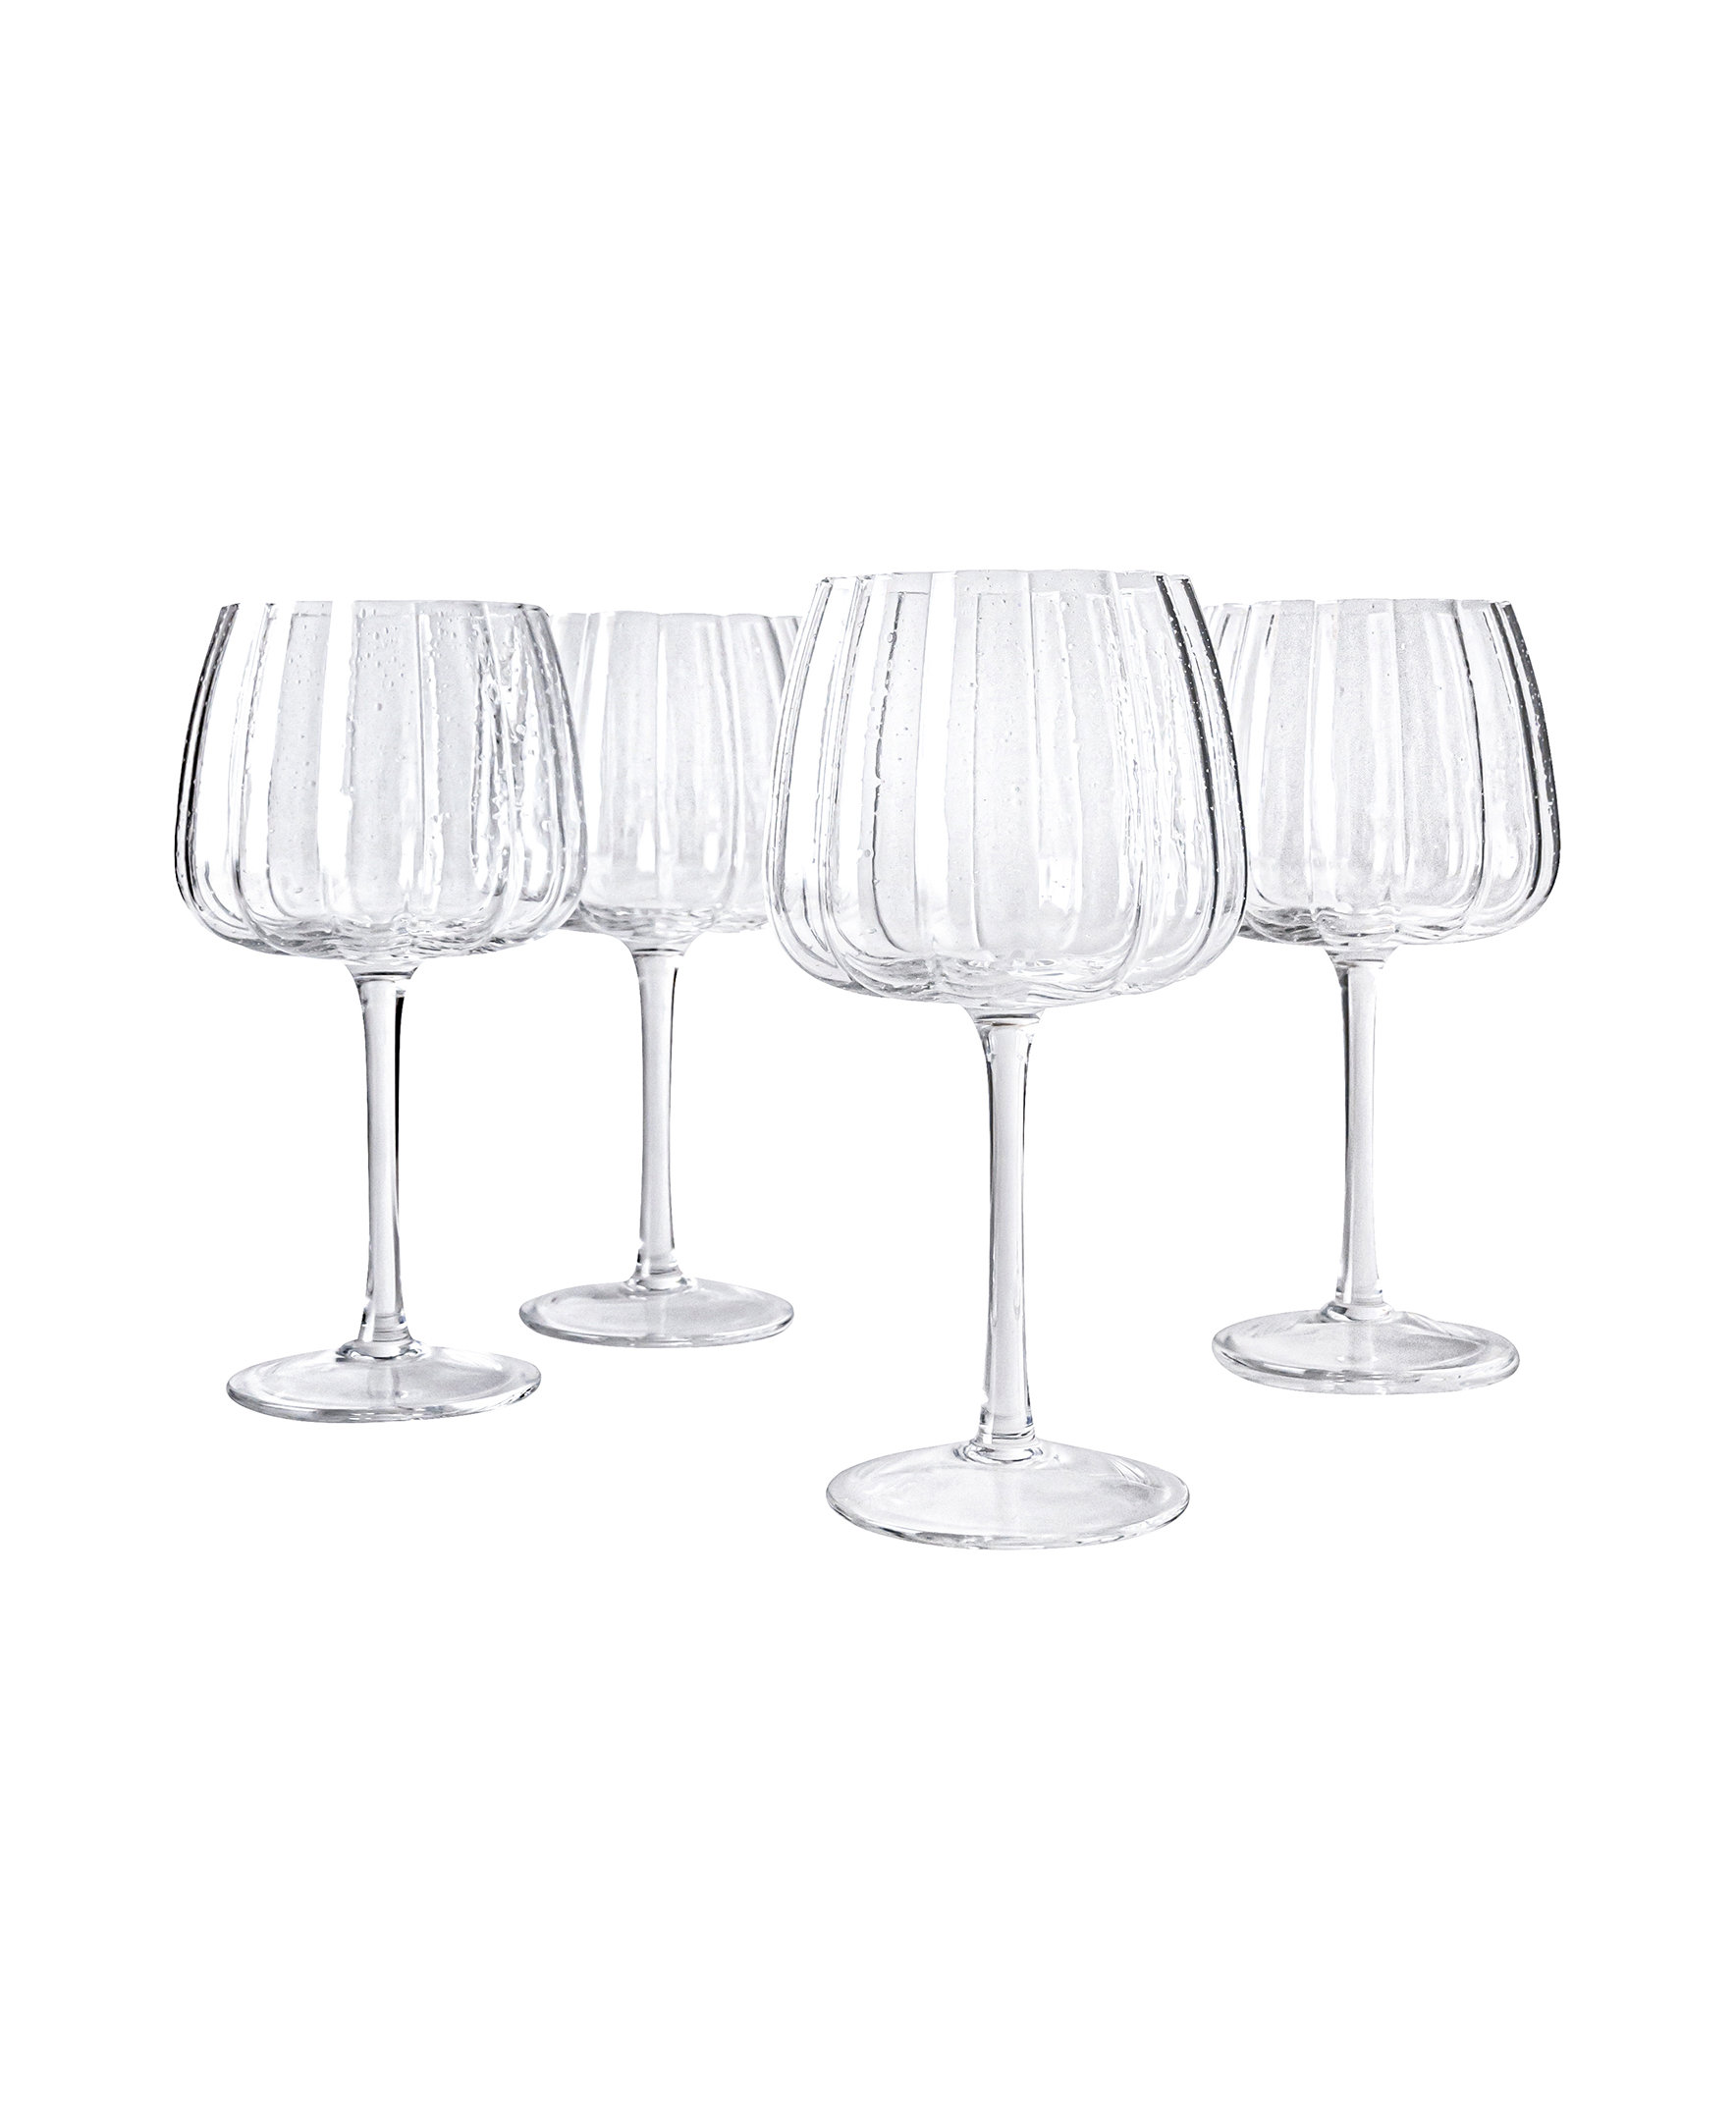 Set of 4 Vintage Crystal Wine Glasses Wide Mouth Goblet